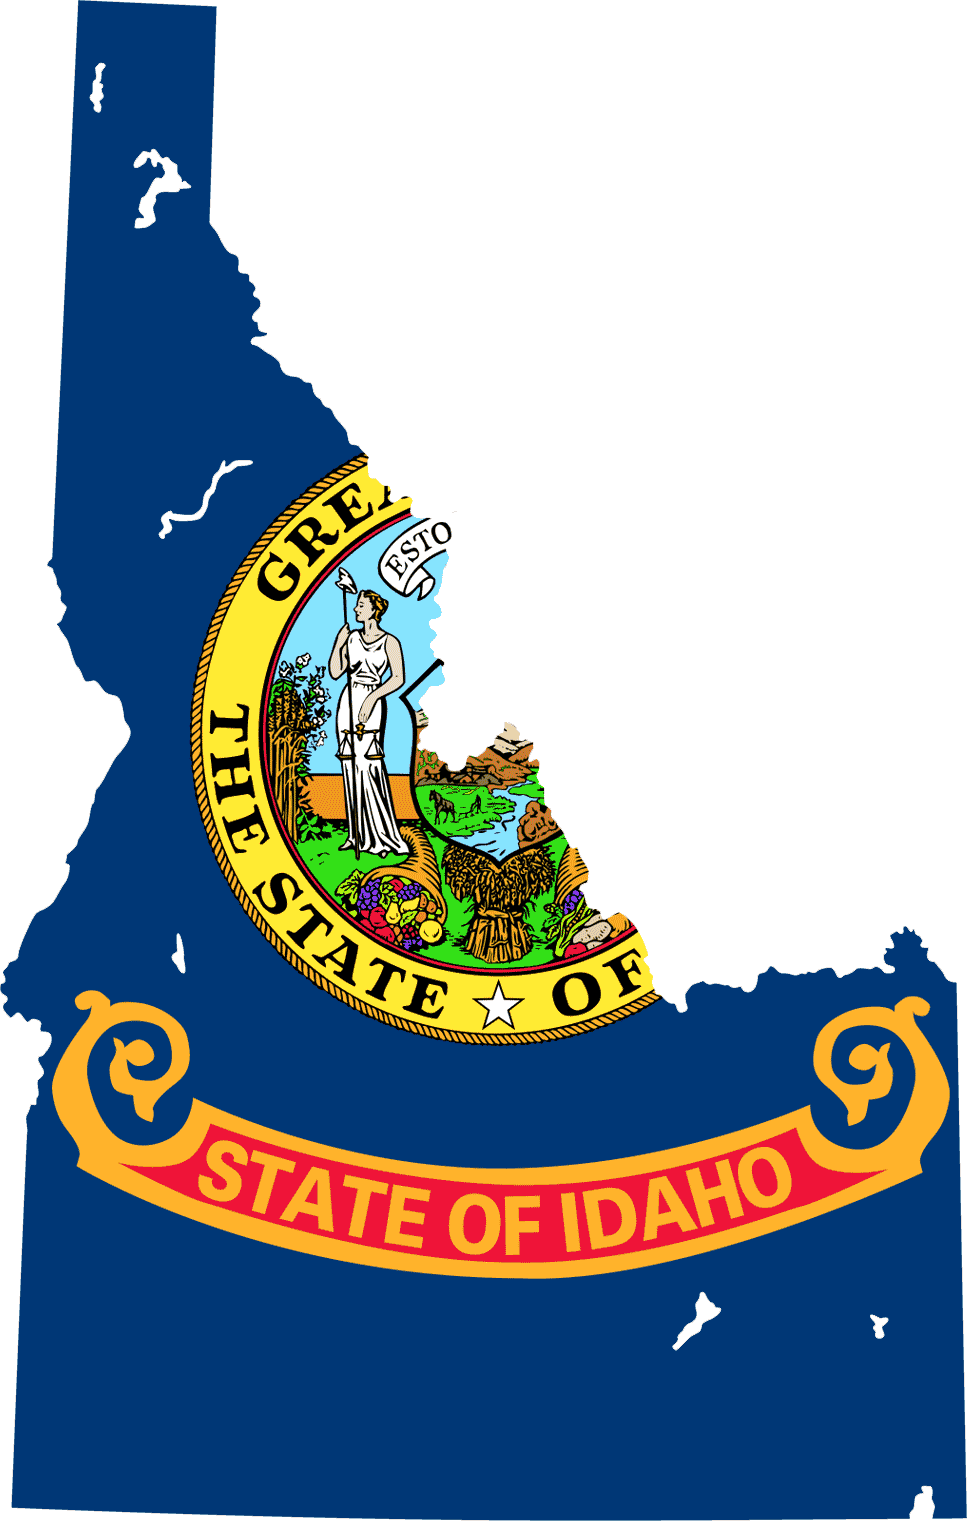 Idaho_bayrak_harita.png